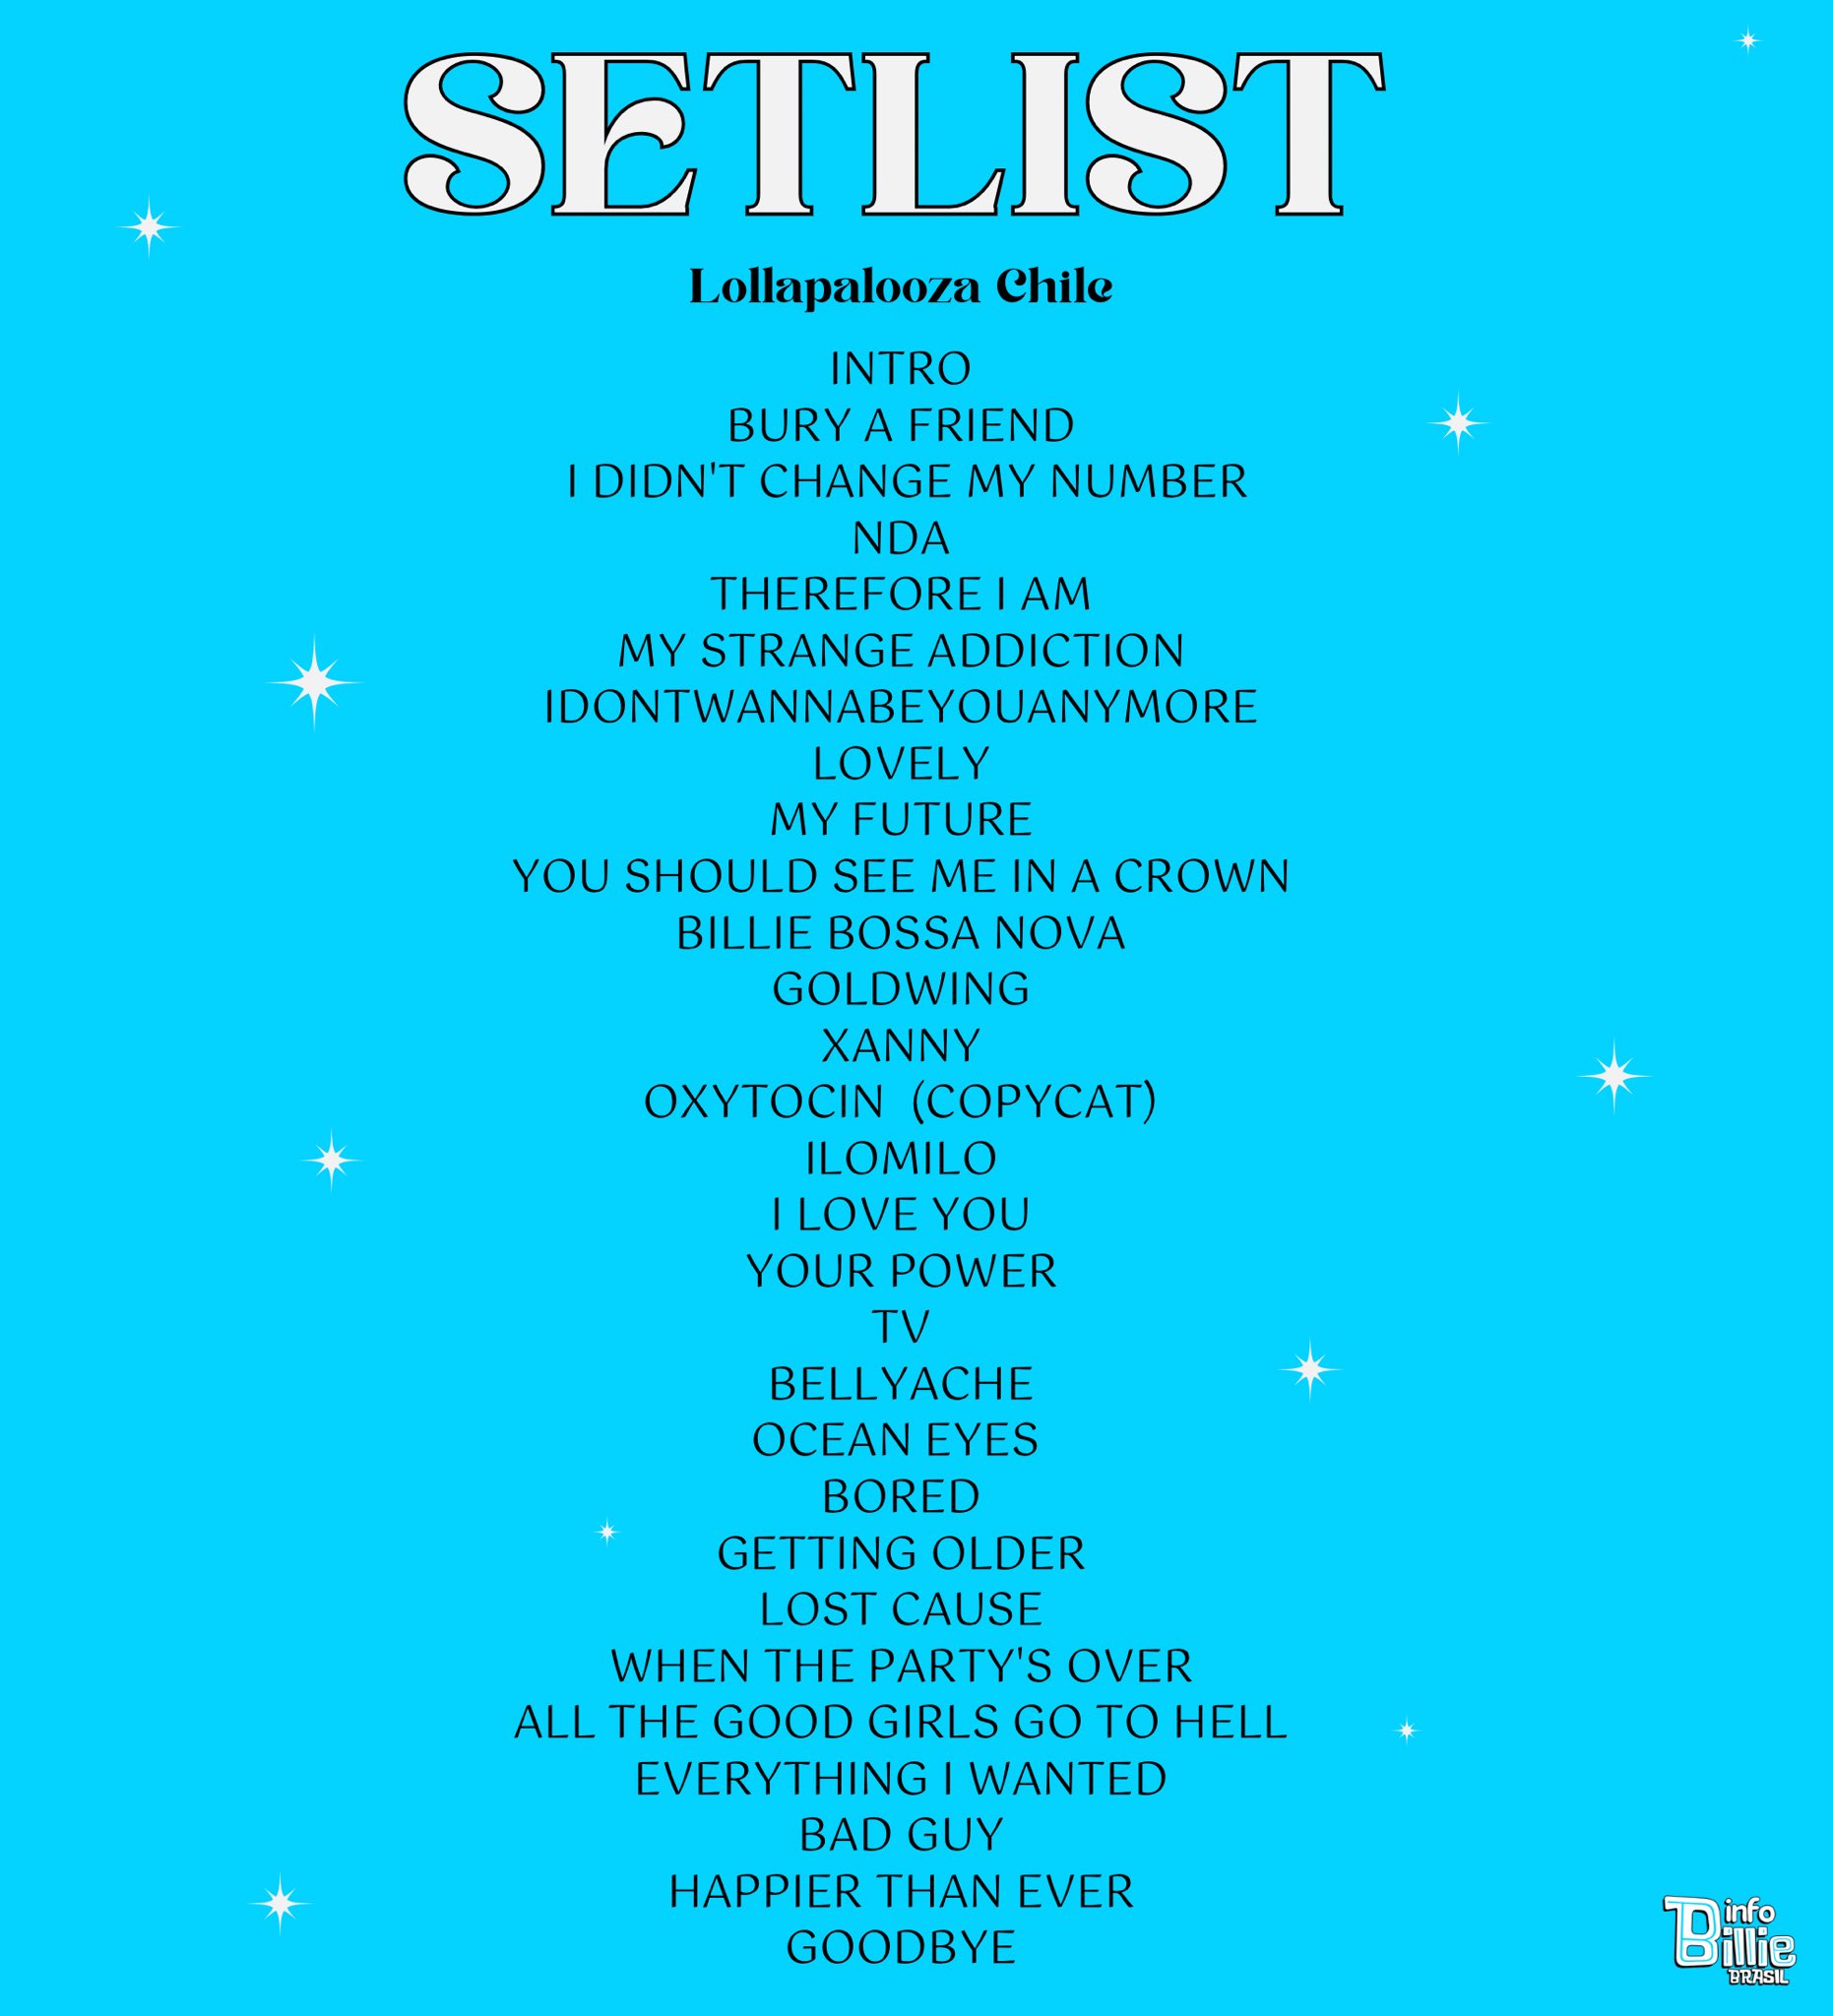 Info Billie Brasil on Twitter: "🚨 Confira a setlist do show de Billie Eilish no Lollapalooza Chile. A cantora deve apresentar as mesmas músicas no restante da turnê na América Latina. O